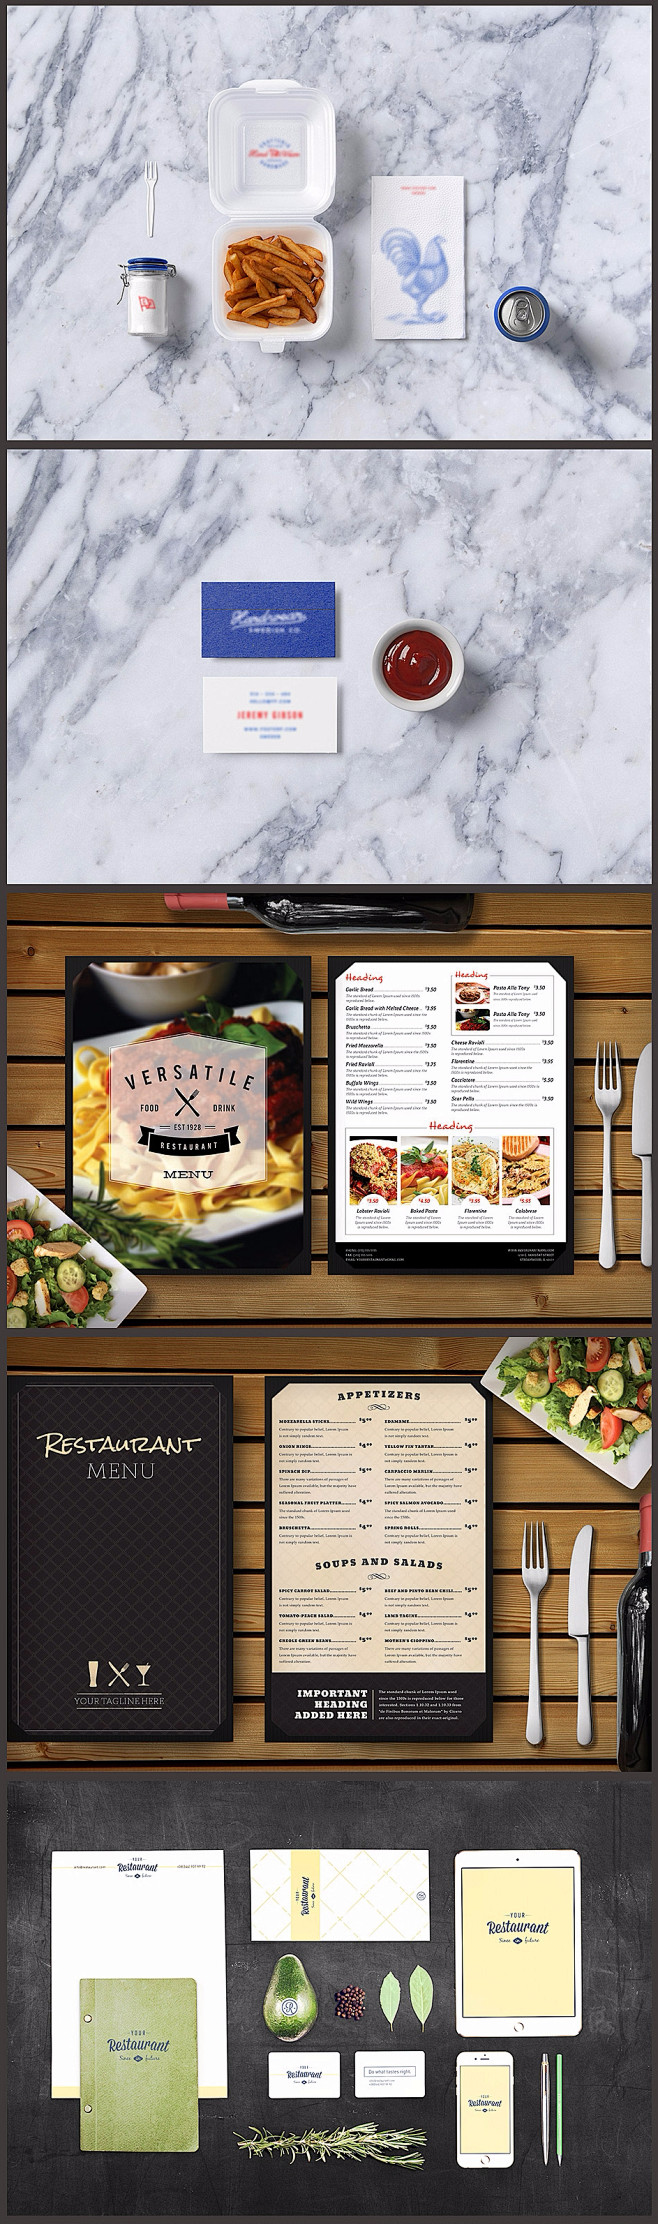 餐饮VI设计素材模板贴图PSD源文件样机...